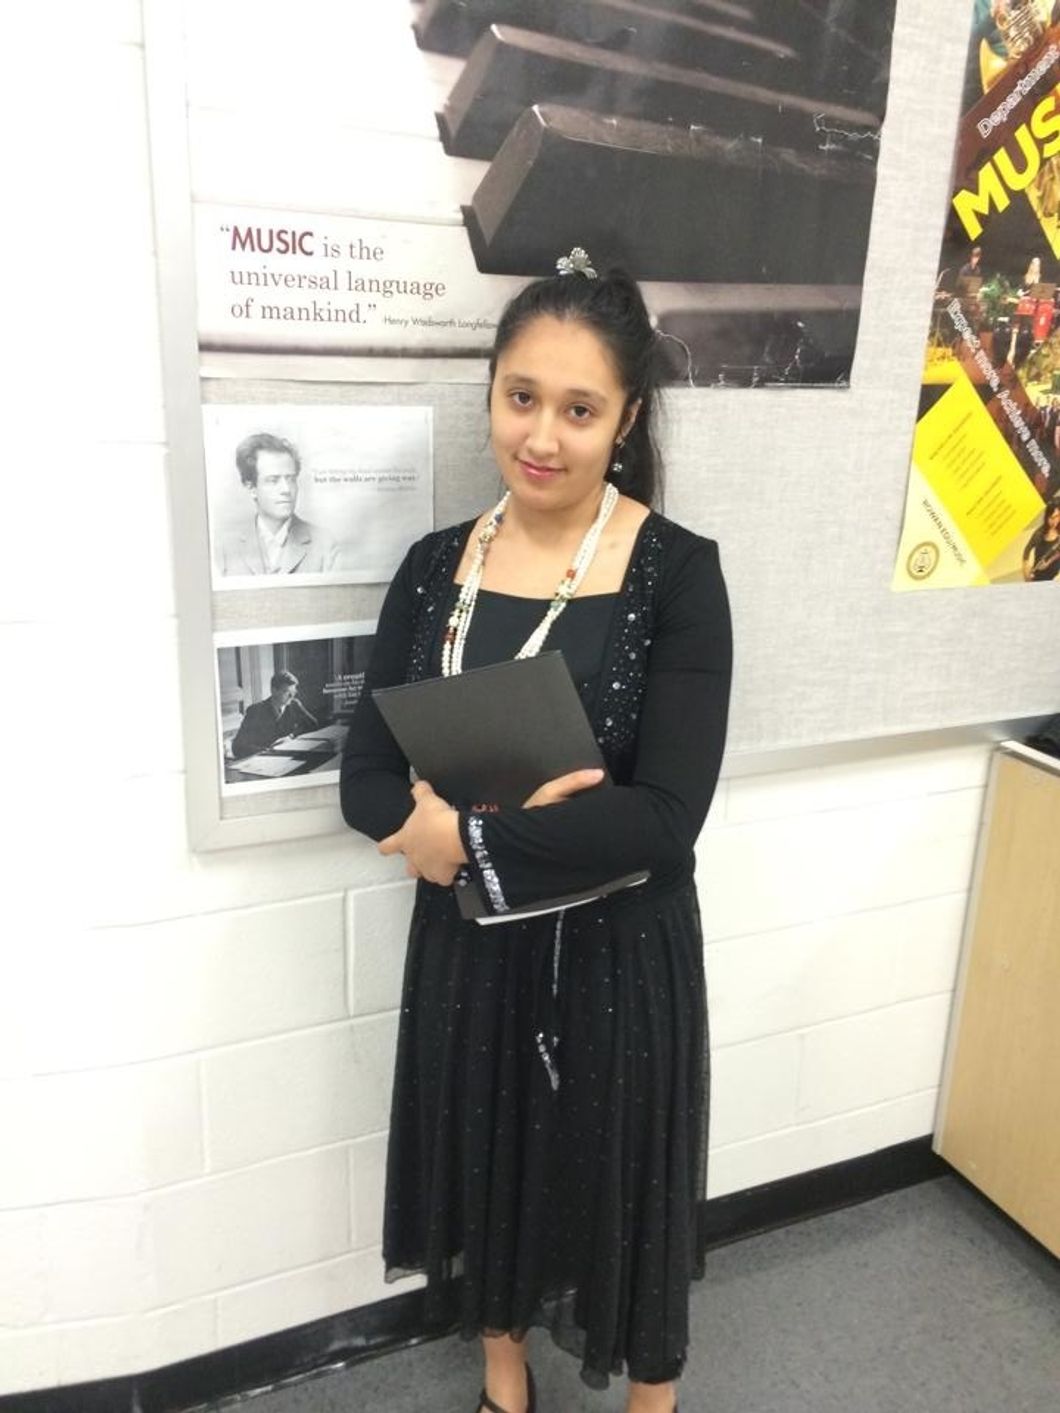 Erikka, wearing all black, holding sheet music